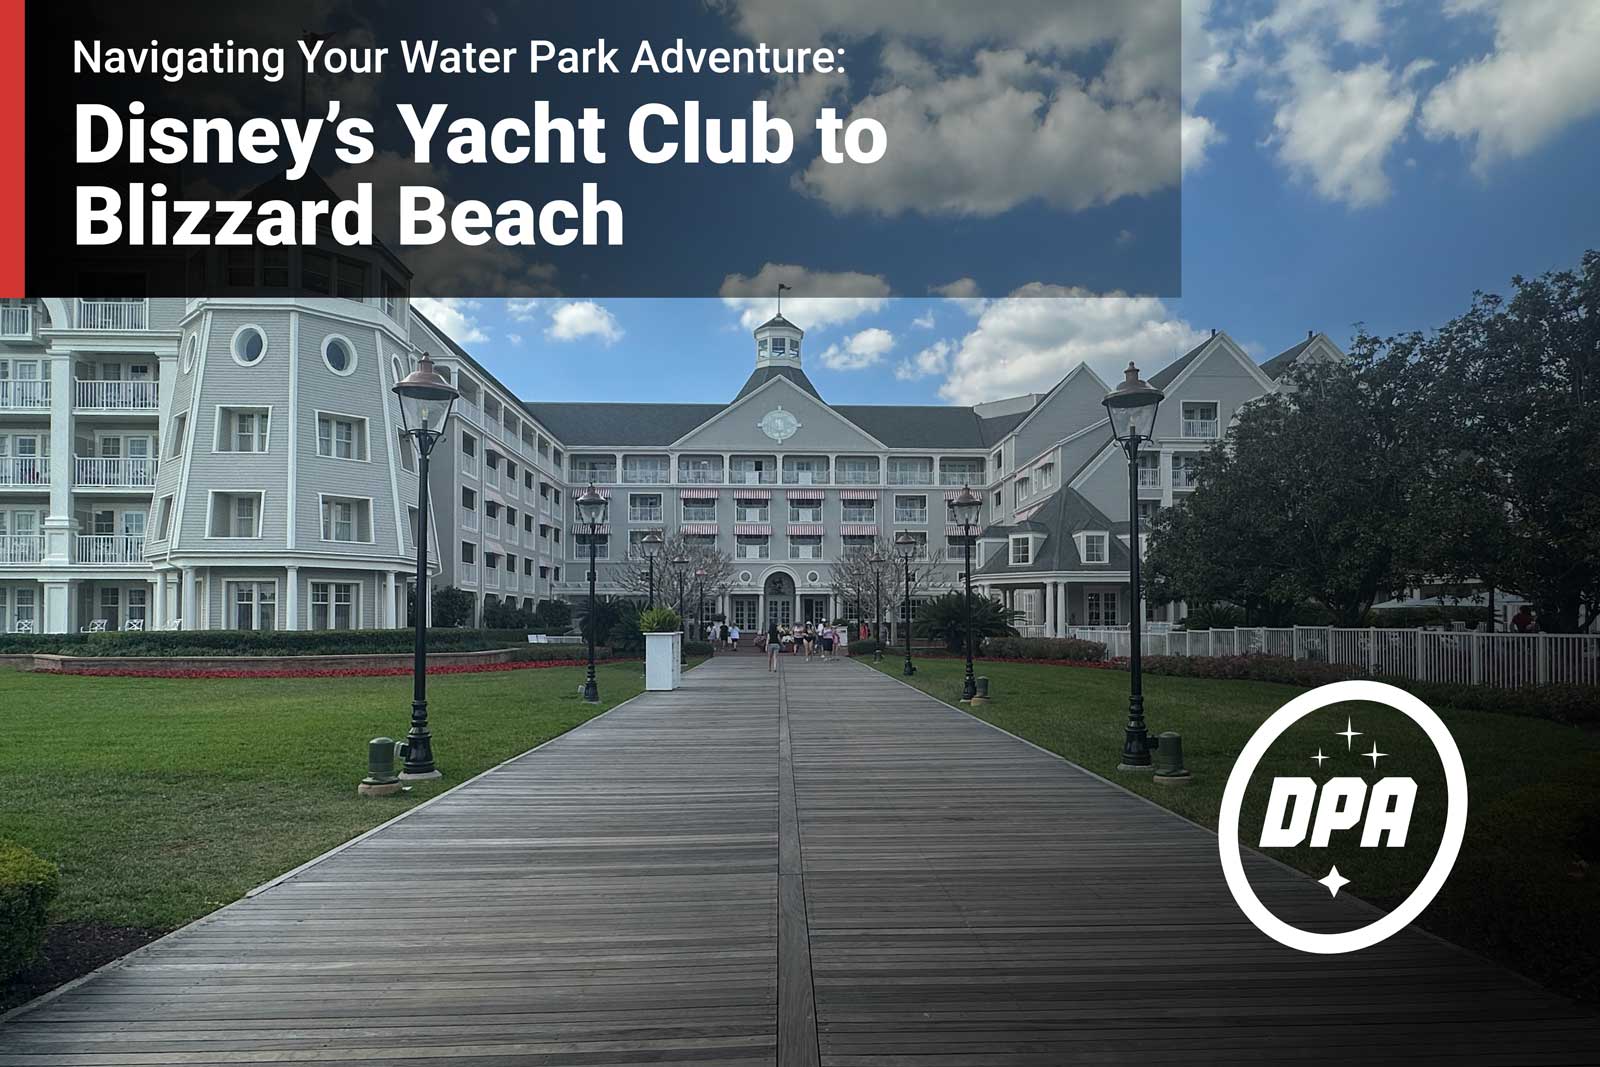 Disney’s Yacht Club to Blizzard Beach